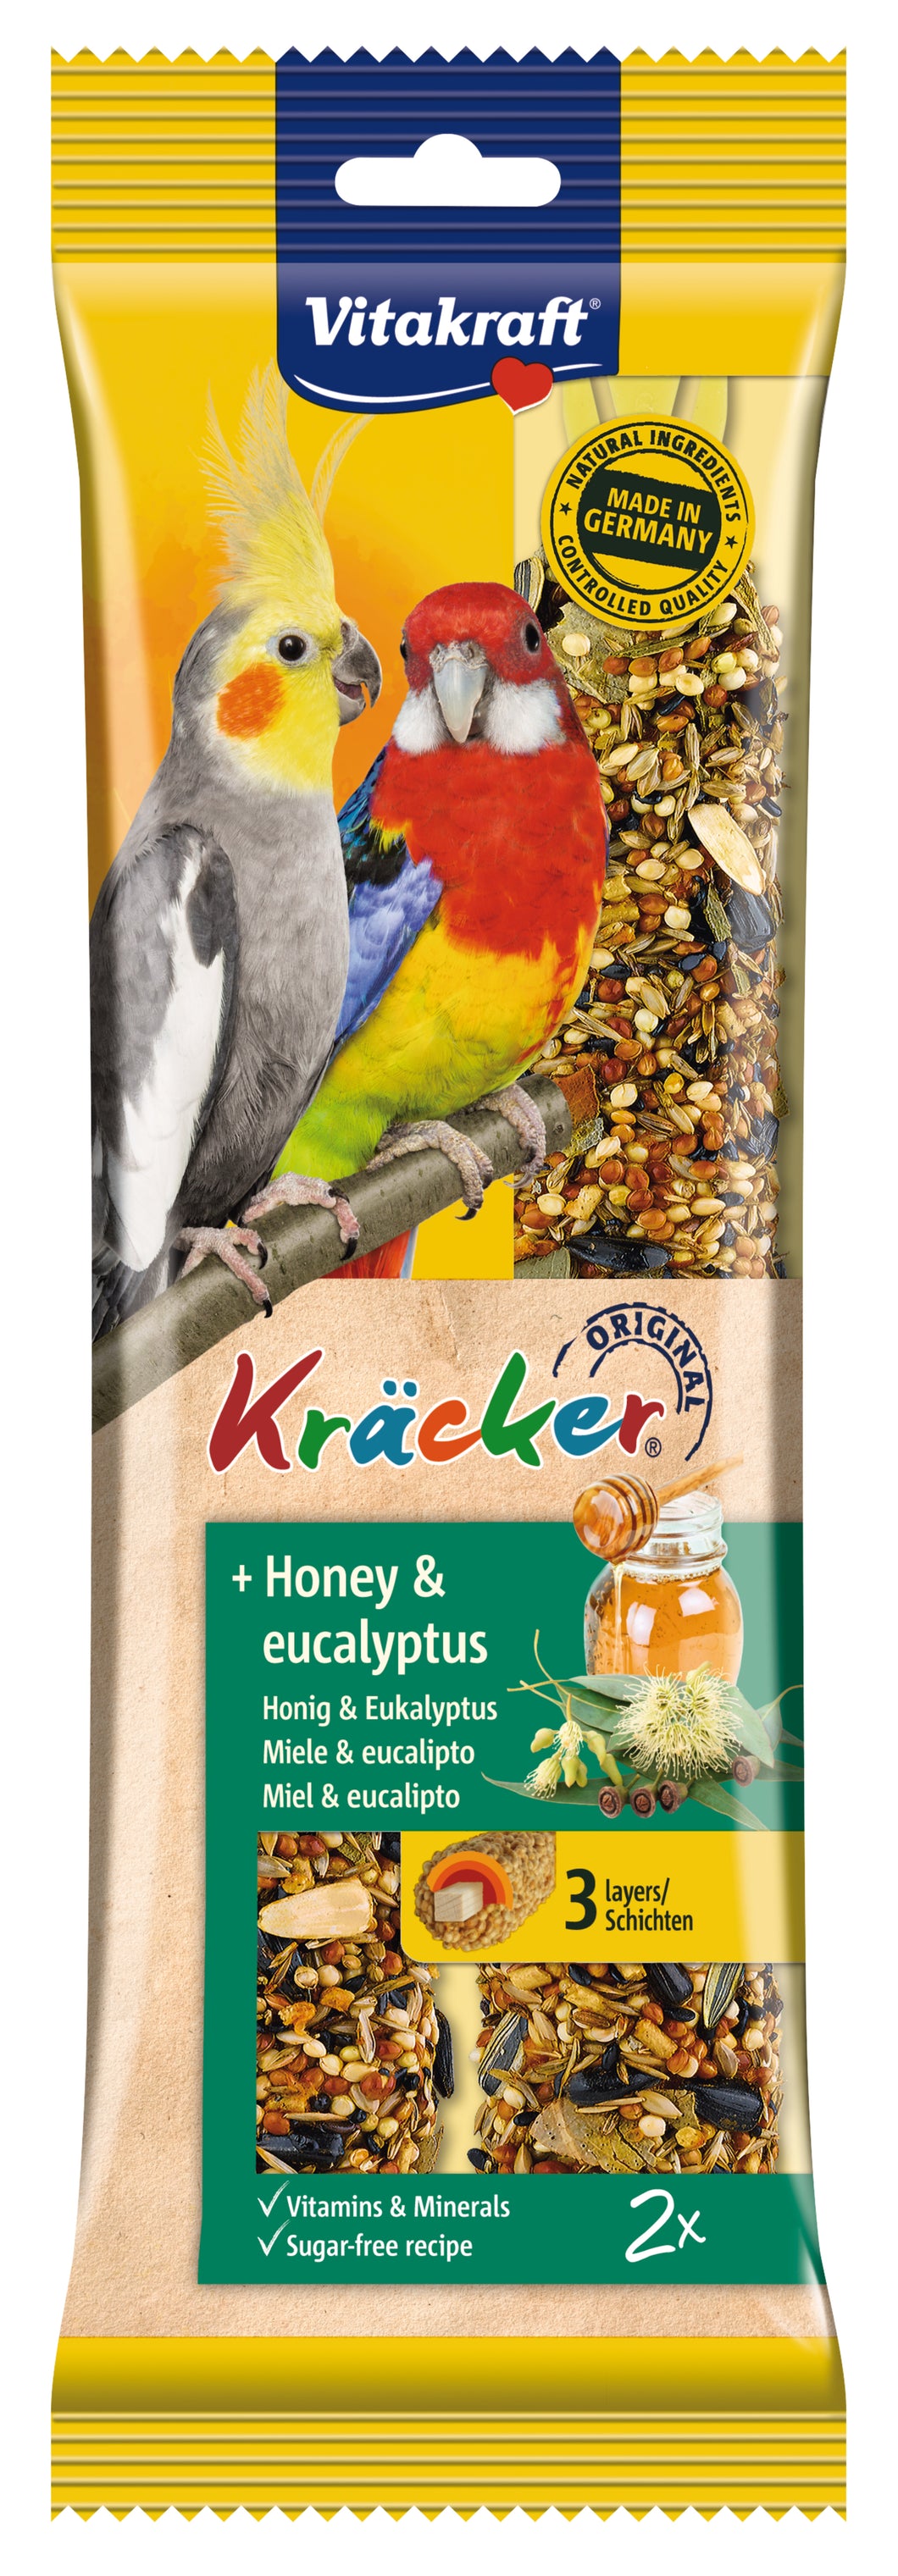 Vitakraft Birds Kräcker Original + Honey & Eucalyptus Cockatiel 2pcs